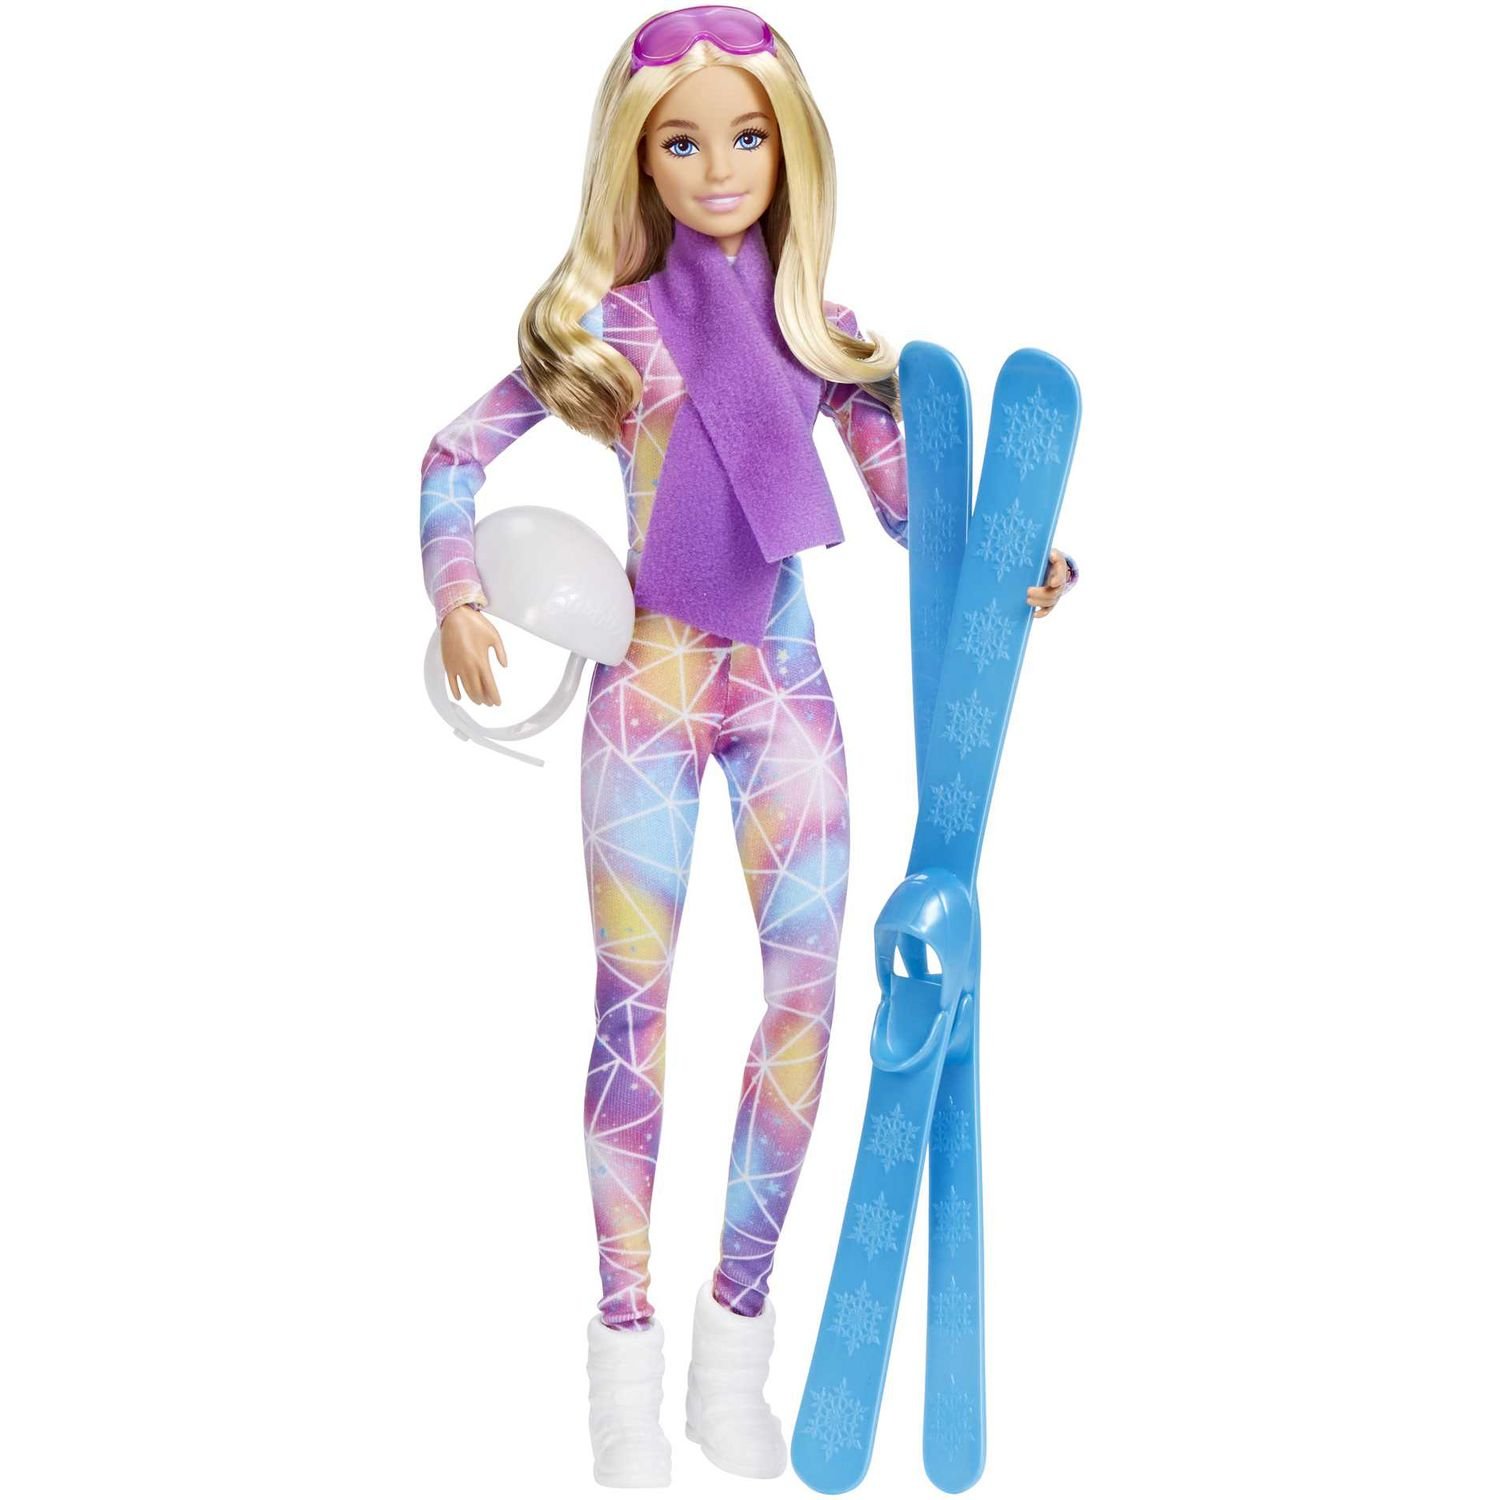 Лялька-лижниця Barbie Зимові види спорту, 30 см (HGM73) - фото 1